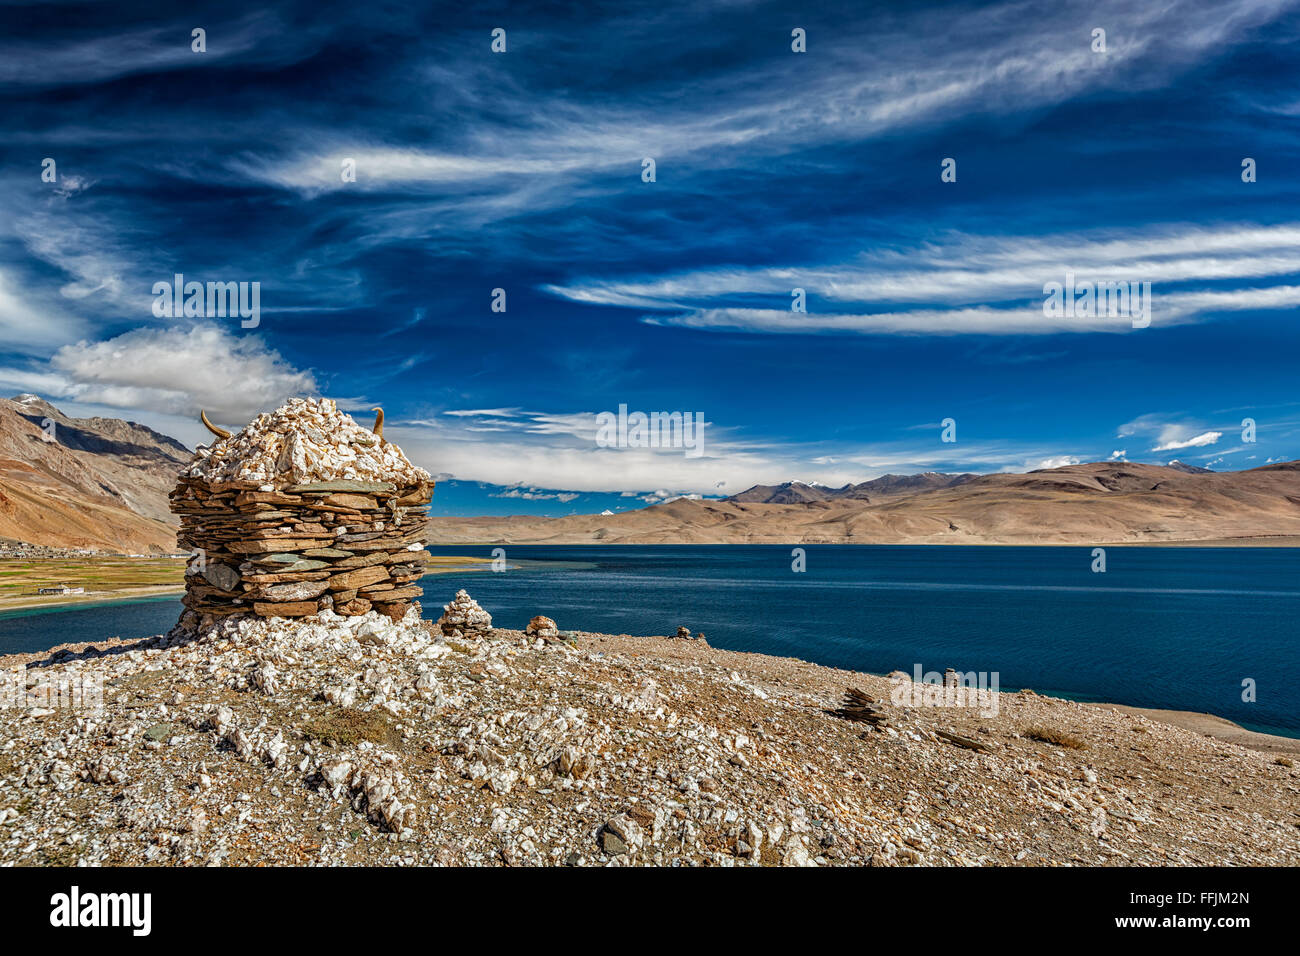 Stone cairn at Himalayan lake Tso Moriri, Stock Photo